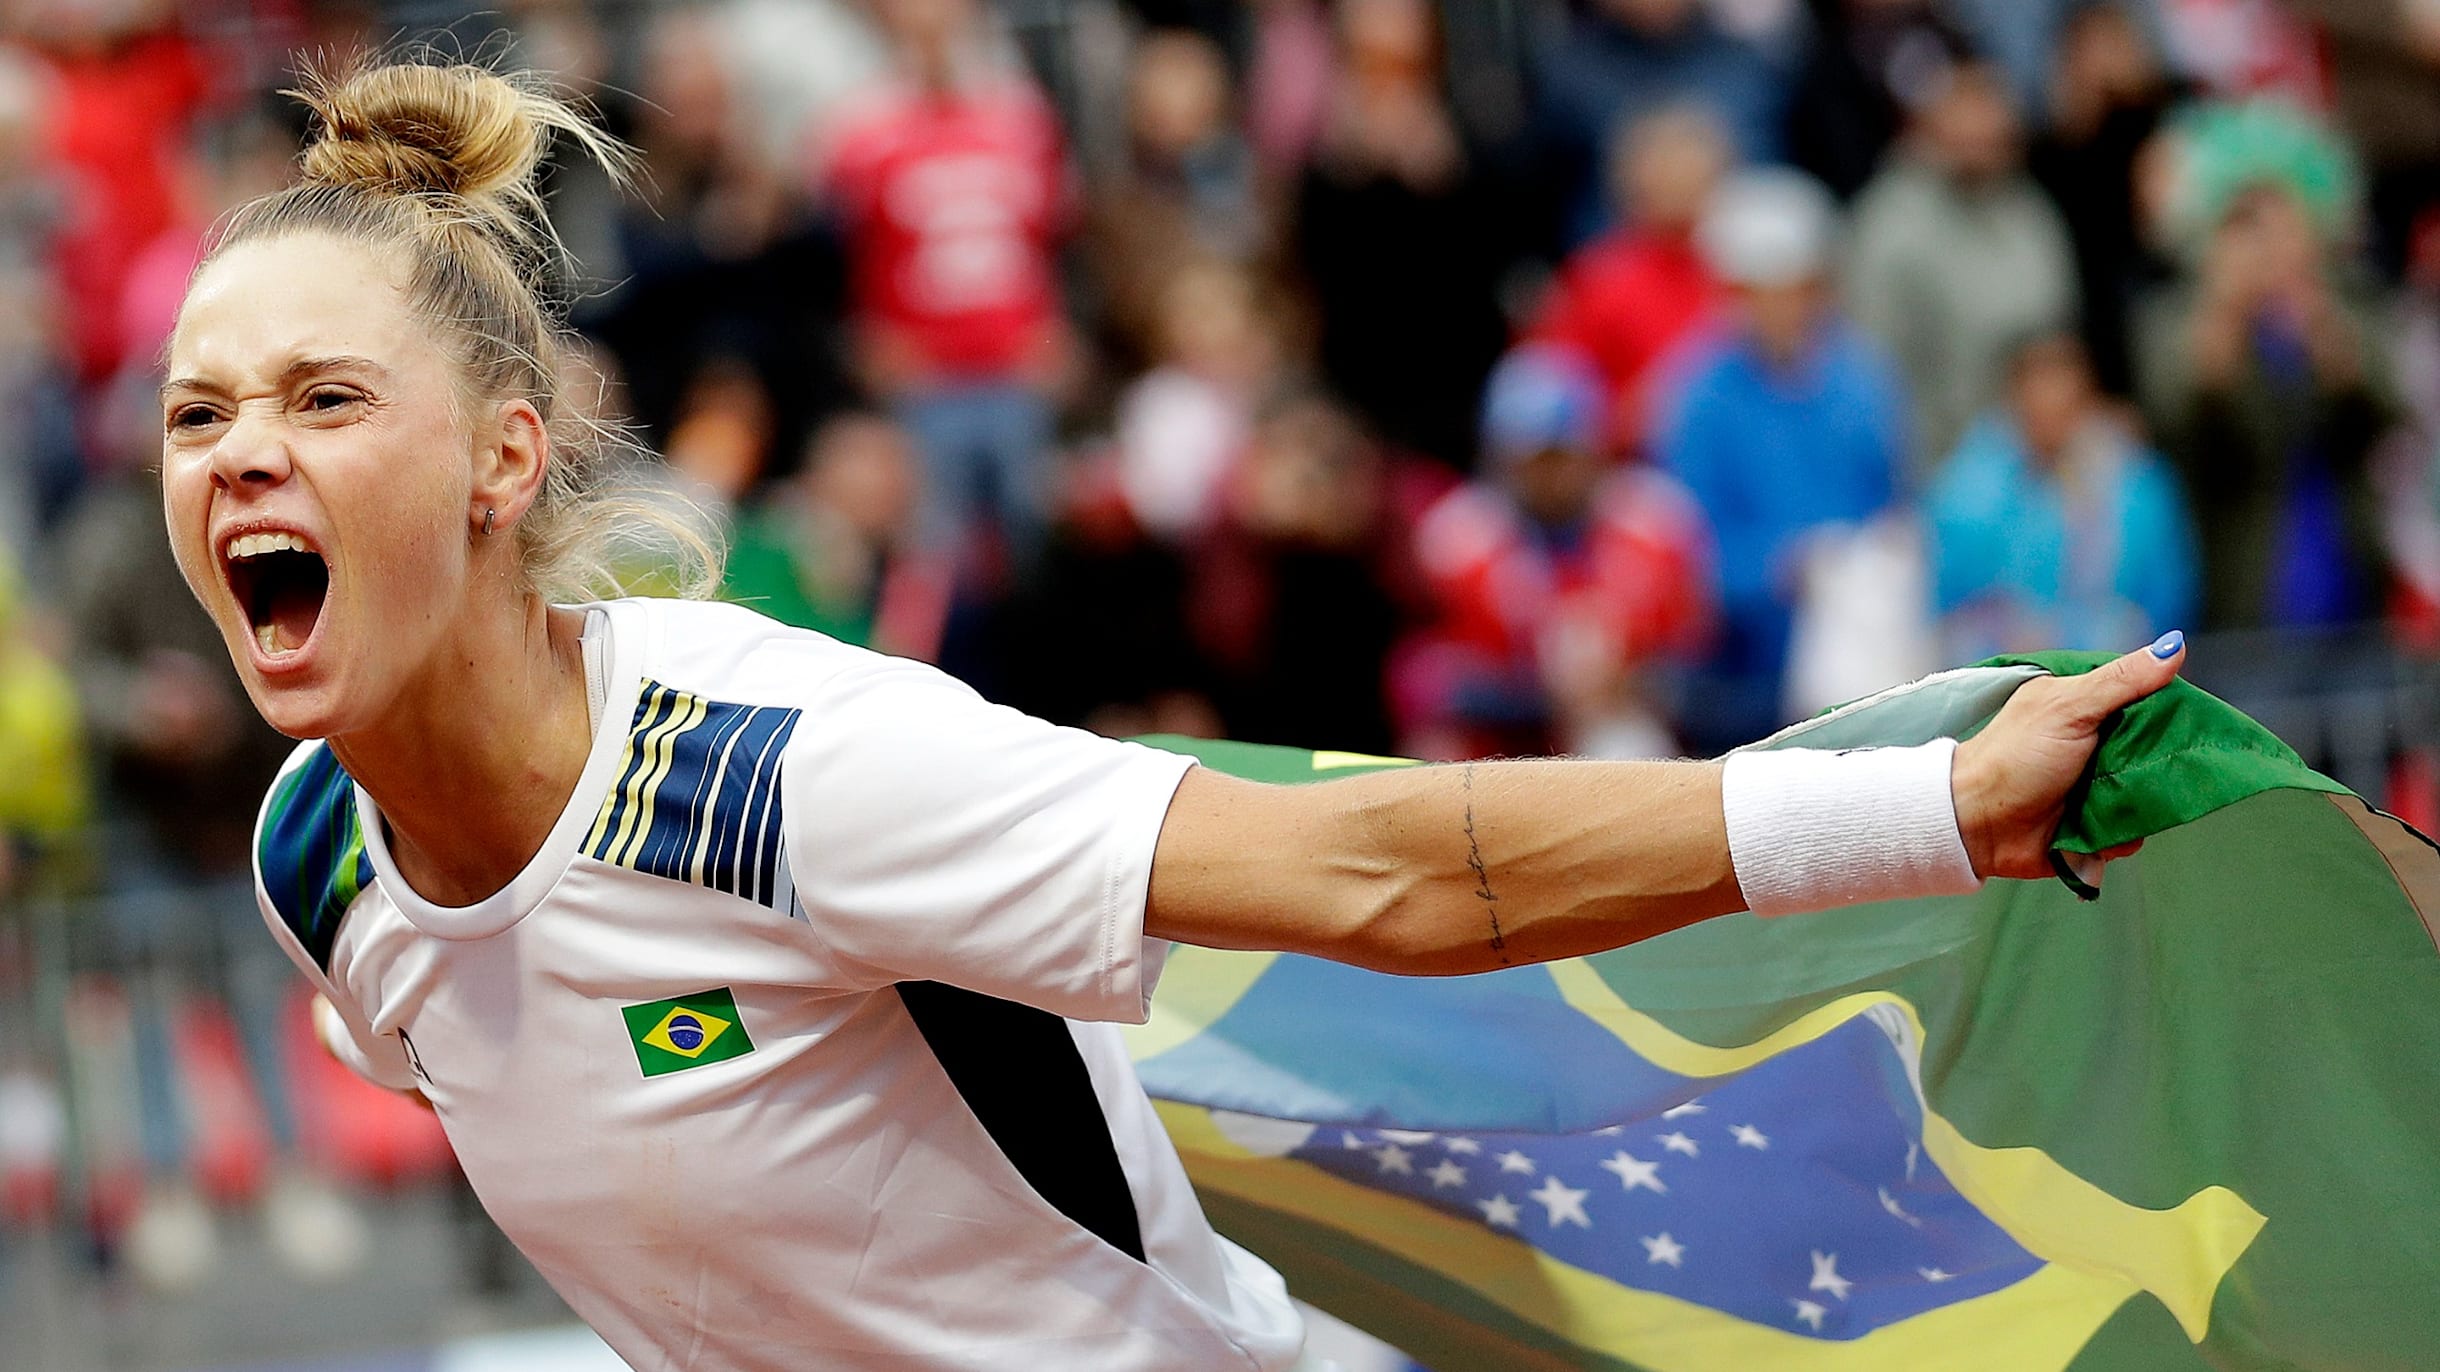 Pan de Santiago: Laura Pigossi leva ouro no tênis feminino e quebra jejum  de 36 anos